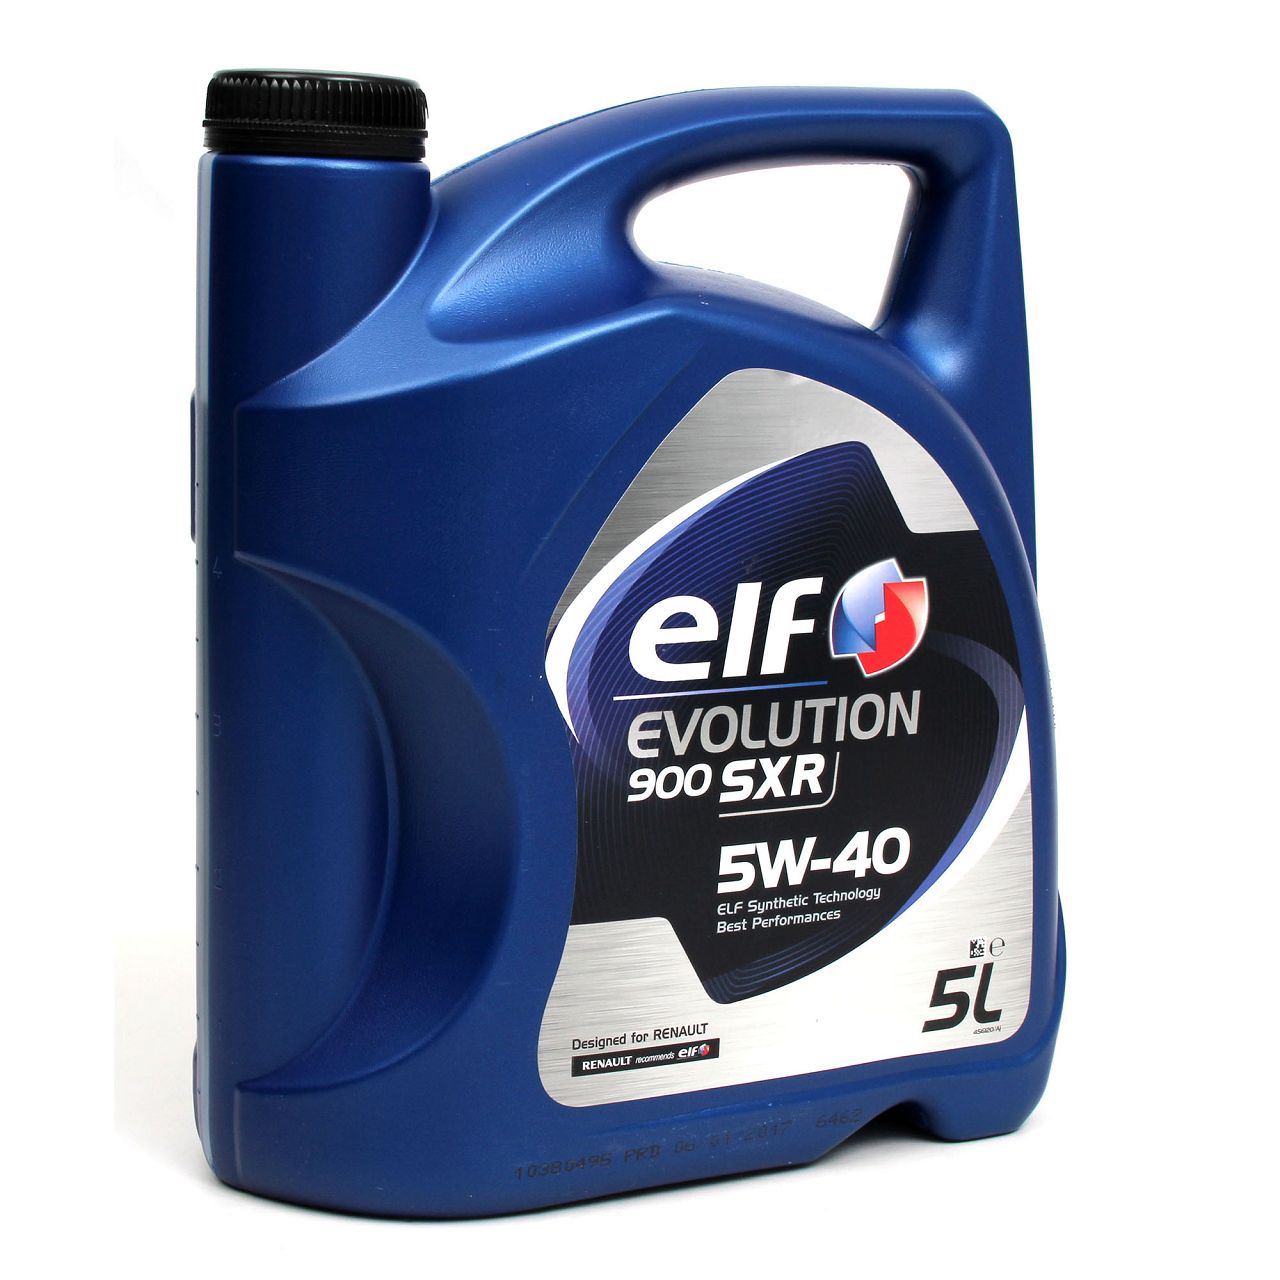 5L elf Evolution 900 SXR 5W-40 Motoröl + MANN Ölfilter für NISSAN OPEL RENAULT